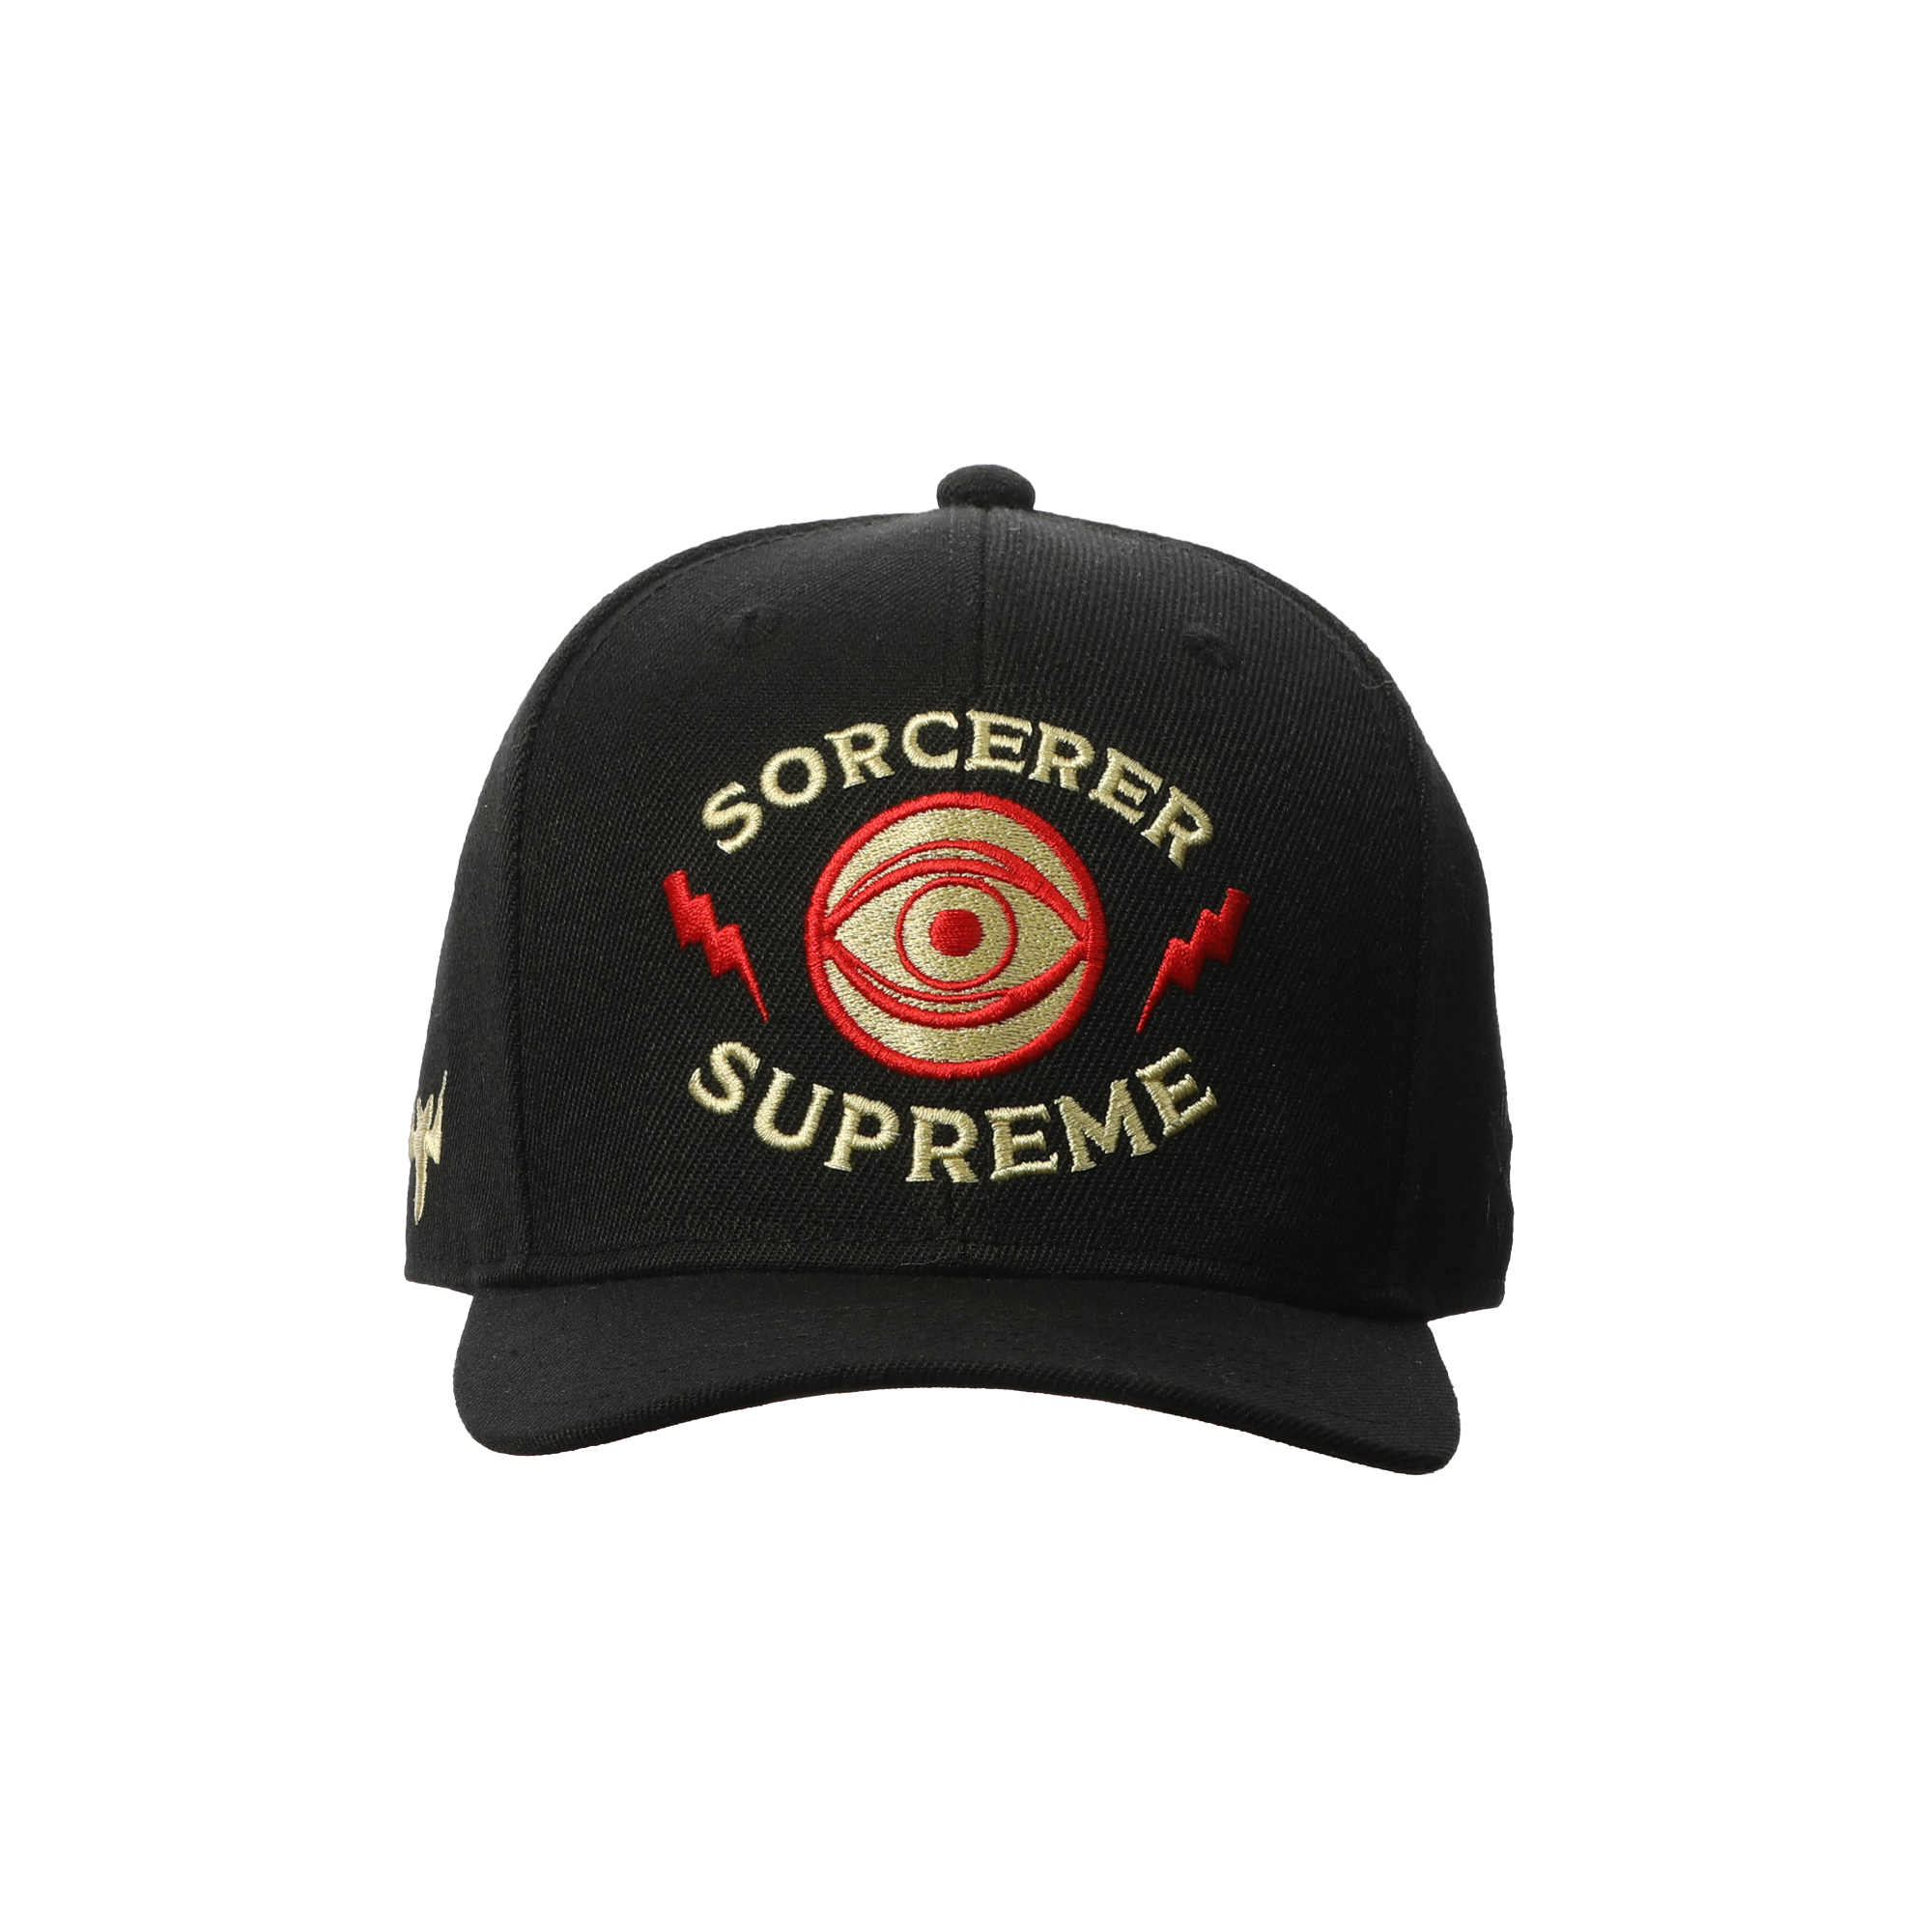 Supreme Hat PNG Images, Transparent Supreme Hat Images